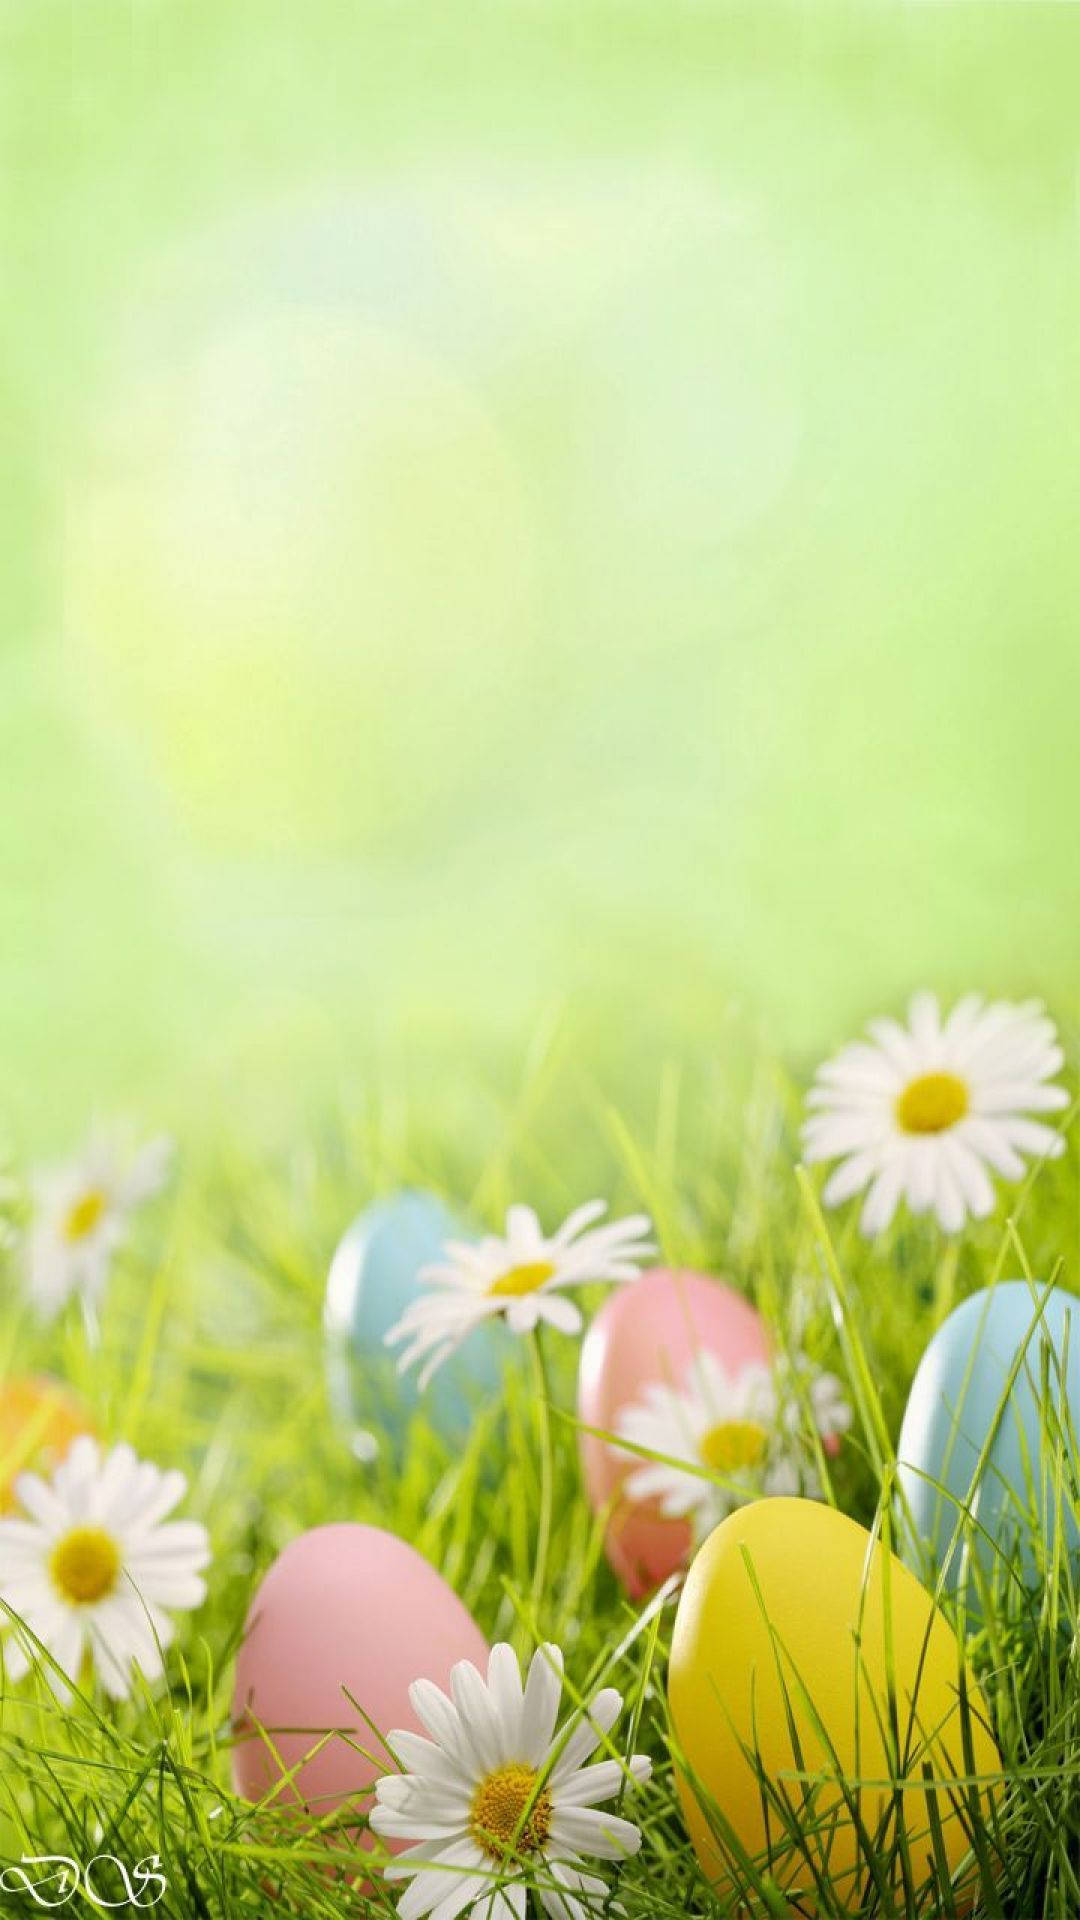 Tải 600 Easter background iPhone Cực đẹp cho mùa Phục sinh